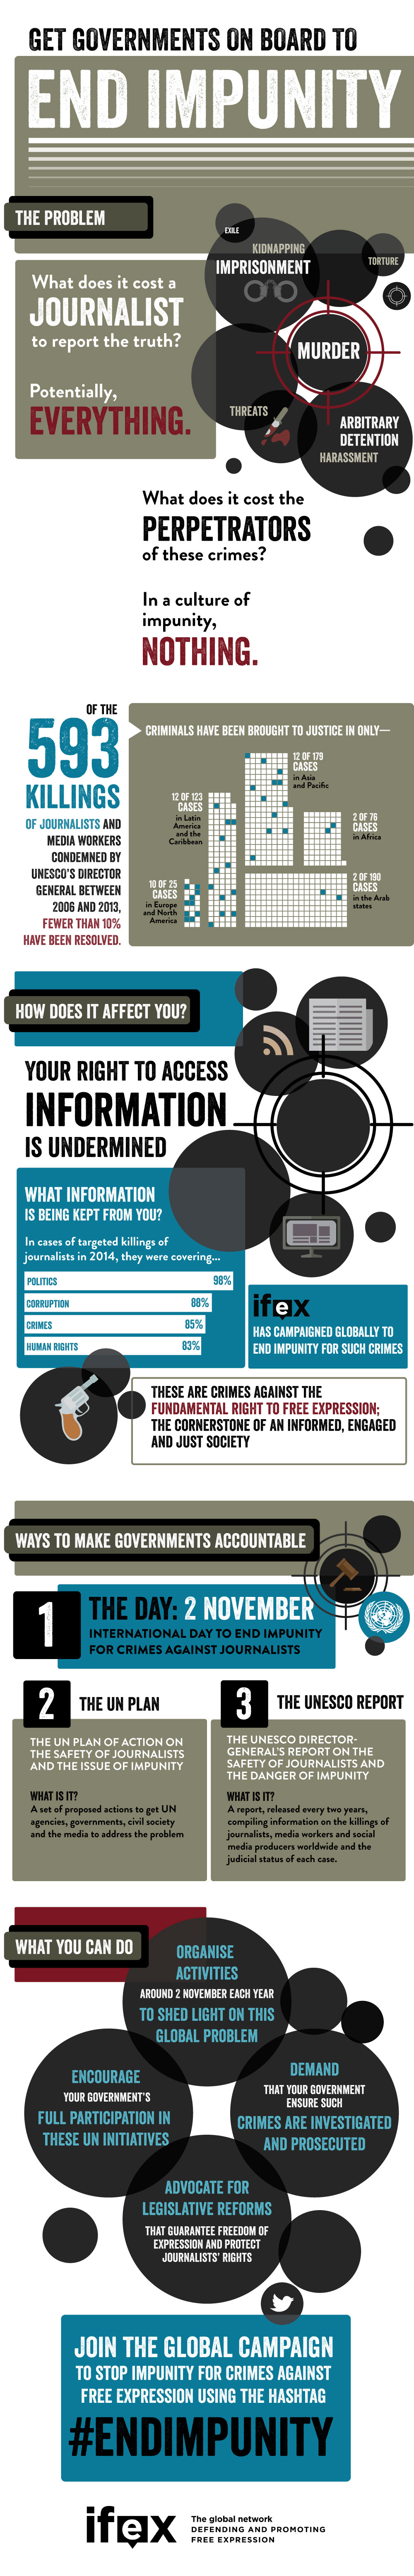 infographic_impunity_en